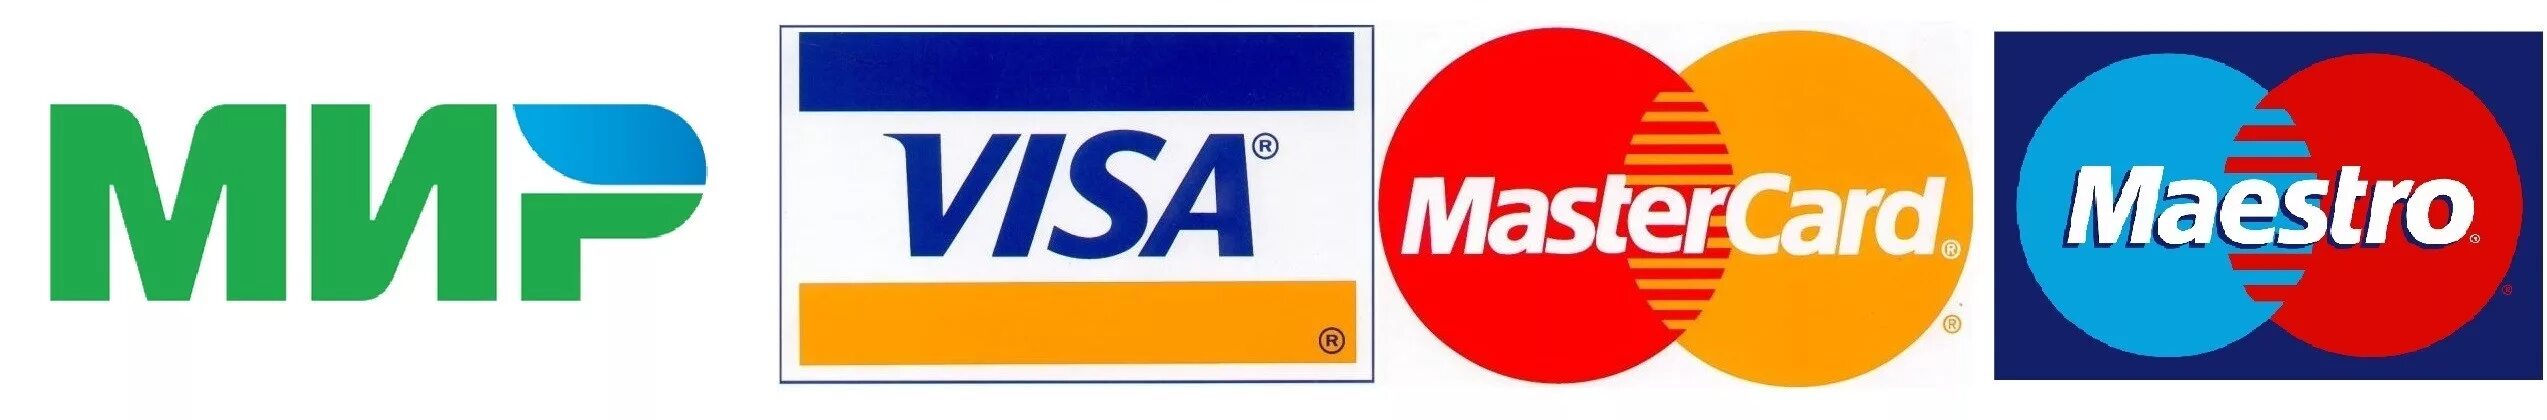 Принимаем visa. Значок оплаты банковскими картами. Логотипы кредитных карт. Логотипы платежных систем. Карты виза и Мастеркард.